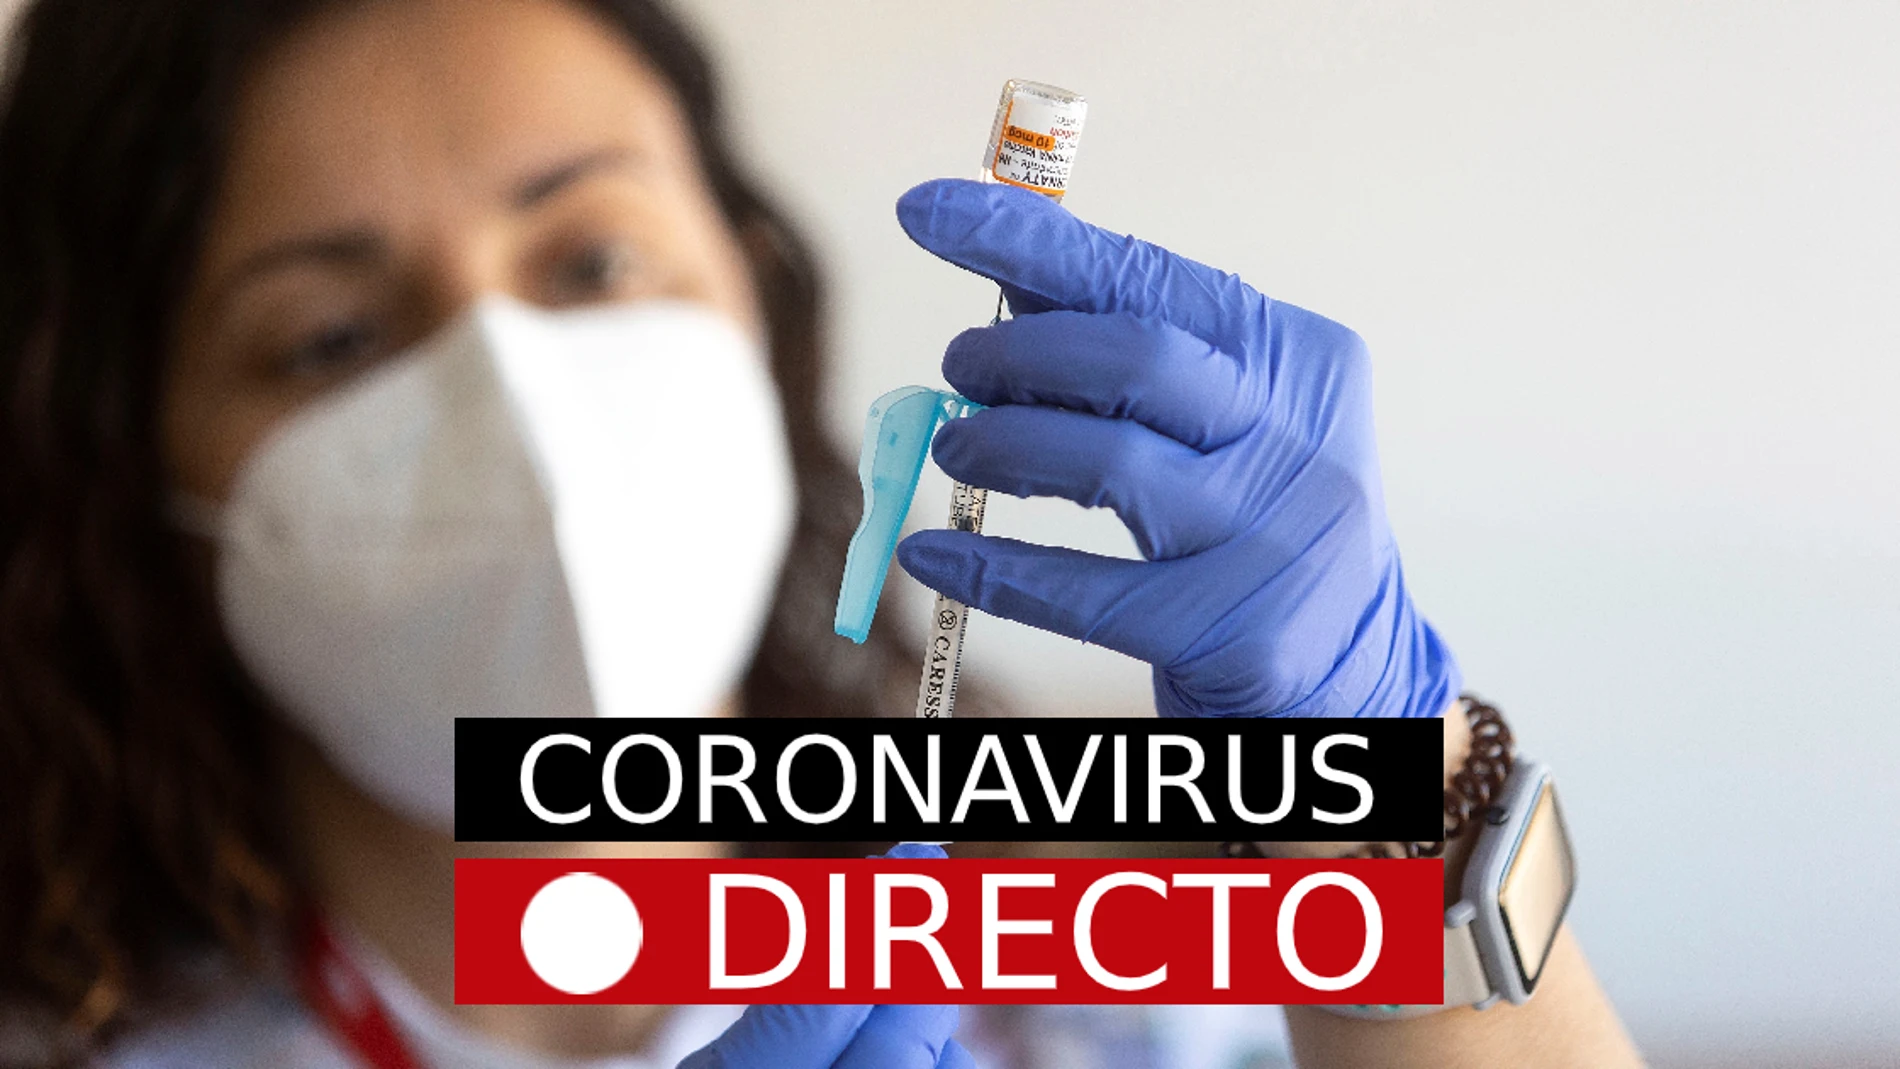 La última hora de la pandemia de coronavirus, en directo